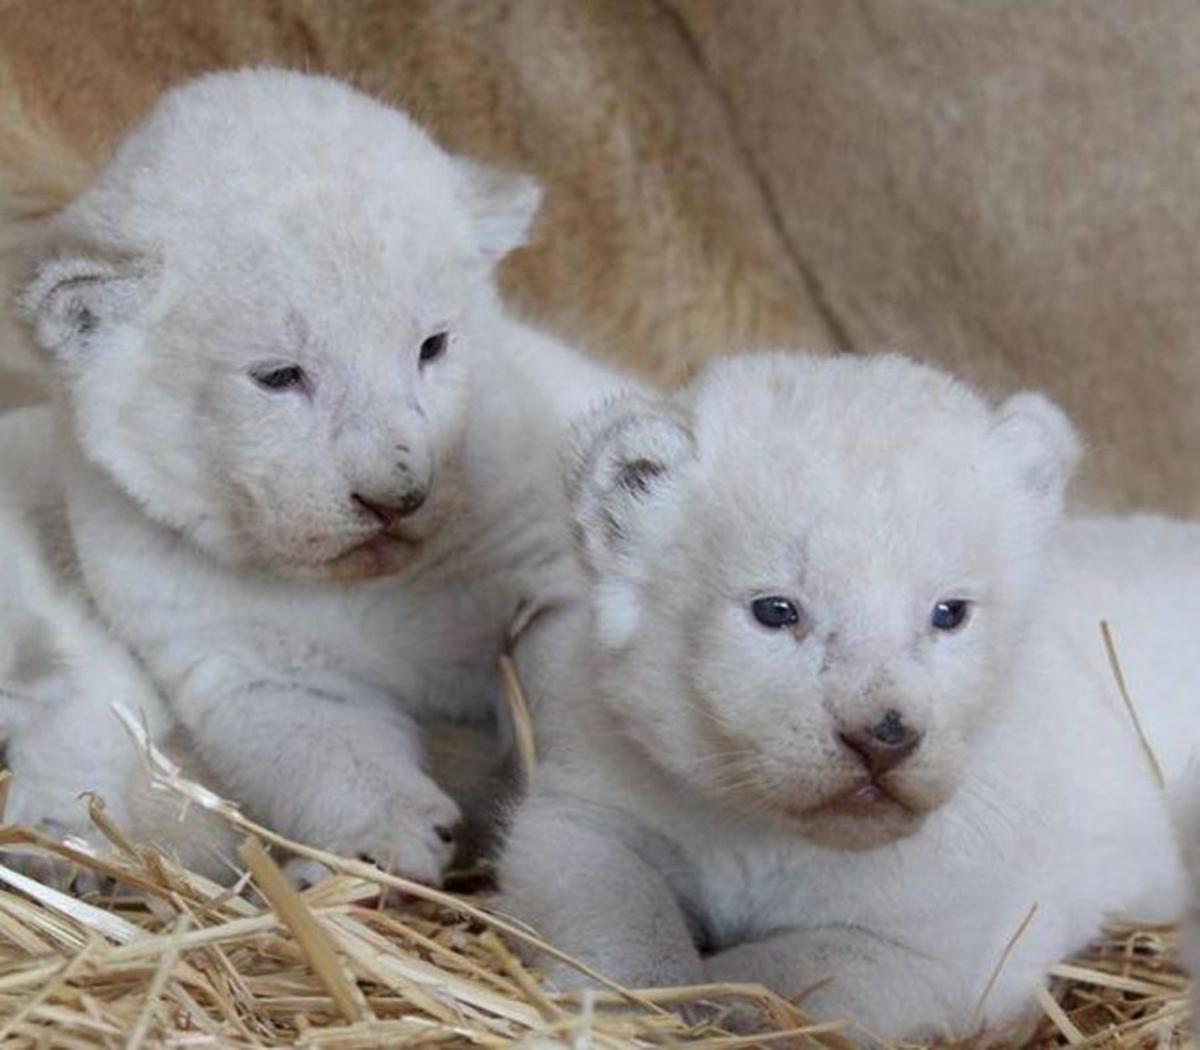 Nacen tres leones blancos en un zoo